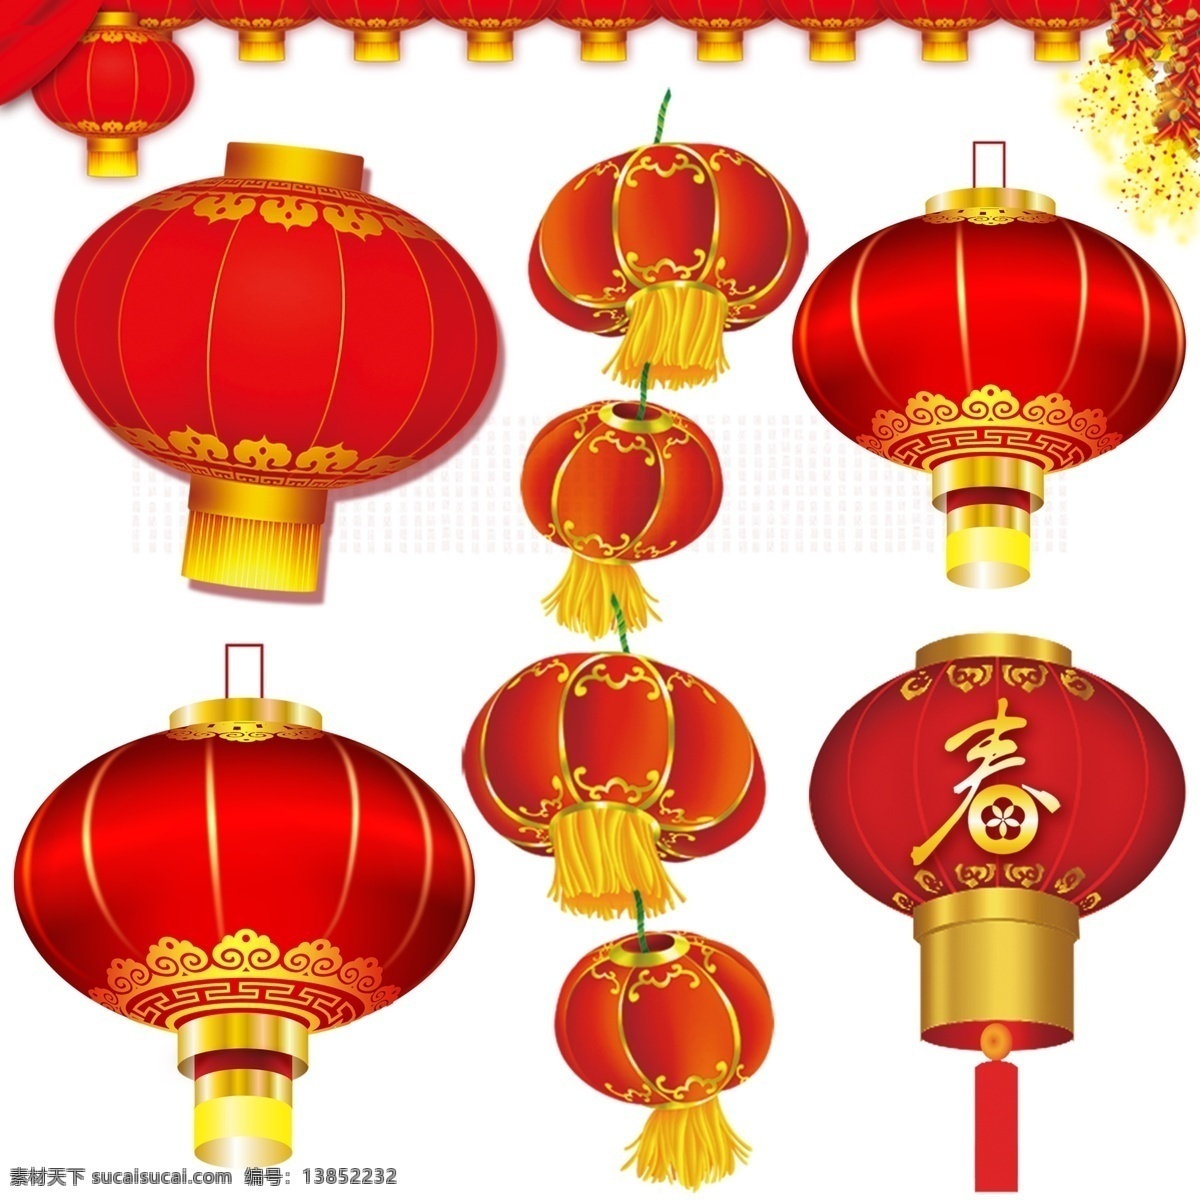 灯笼 灯笼素材下载 鲜花 灯笼模板下载 红色 春节素材清 福 双灯笼 中国古代素材 分层 源文件 广告设计模板